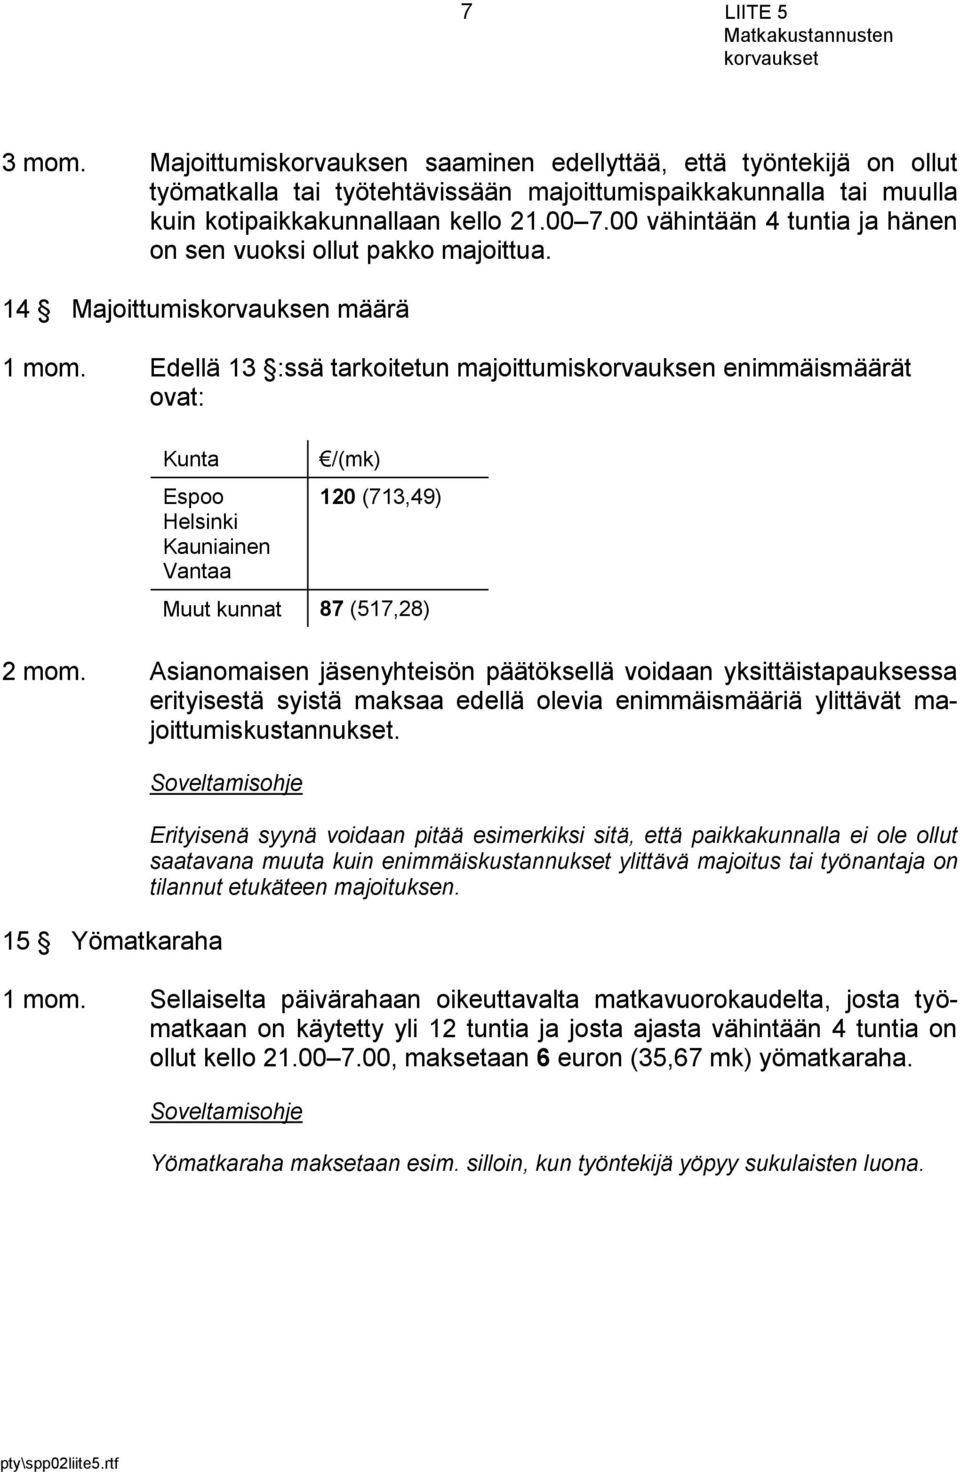 Edellä 13 :ssä tarkoitetun majoittumiskorvauksen enimmäismäärät ovat: Kunta Espoo Helsinki Kauniainen Vantaa /(mk) 120 (713,49) Muut kunnat 87 (517,28) 2 mom.